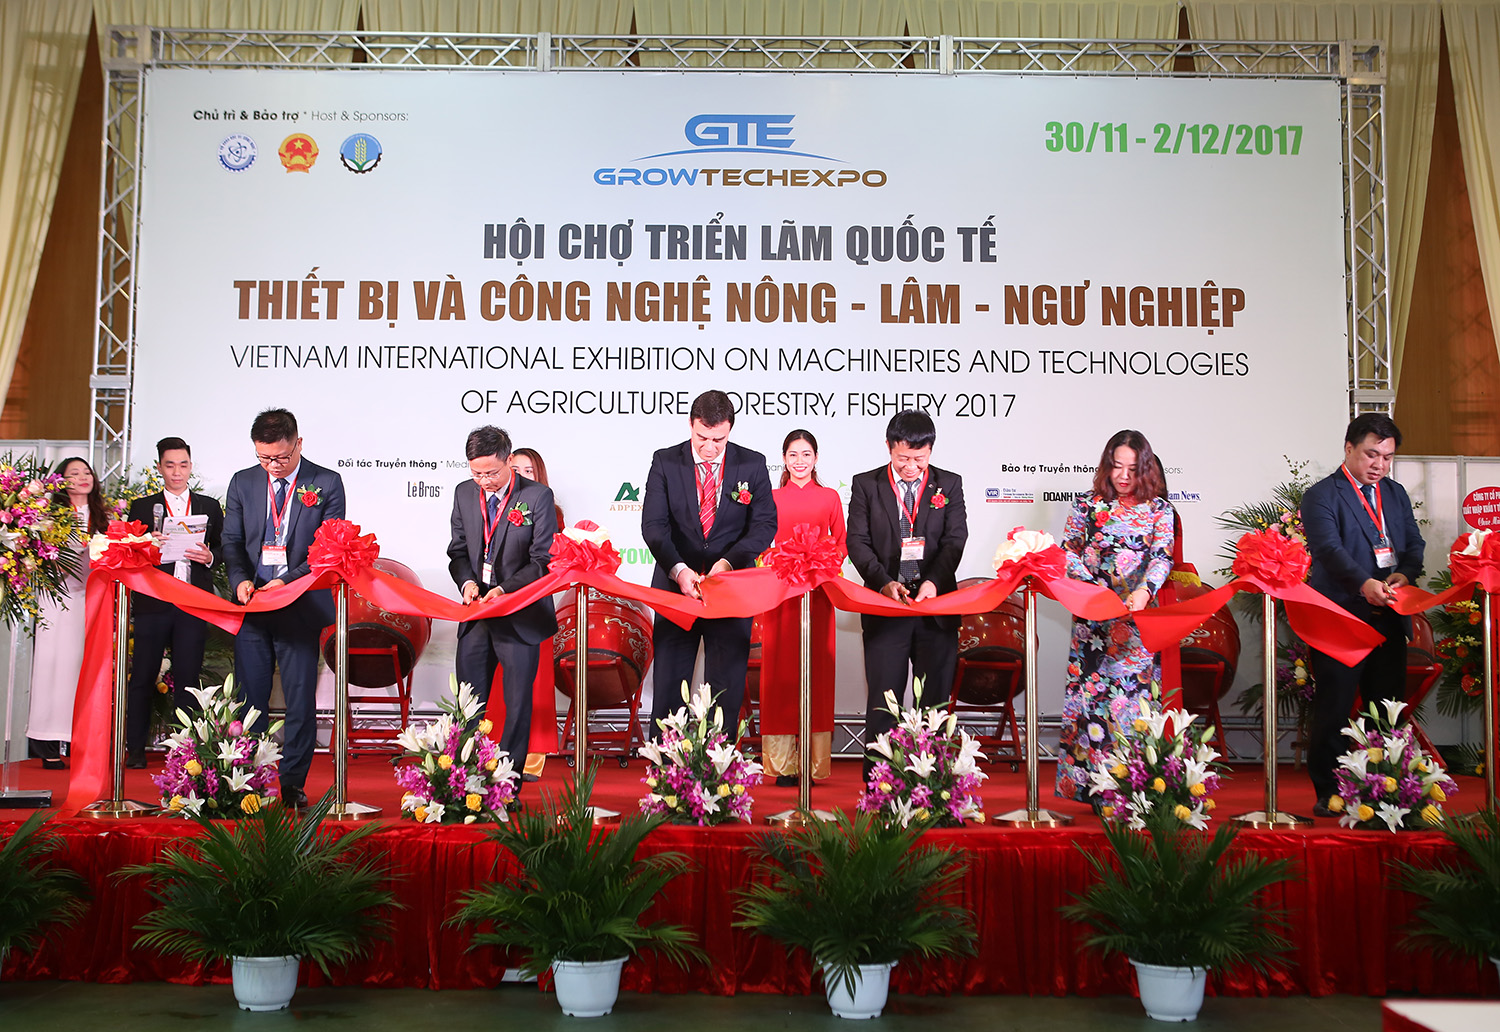 Thông tin triển lãm Growtech 2018 - Triển lãm quốc tế Thiết bị công nghệ nông – lâm – ngư nghiệp tại Hà Nội